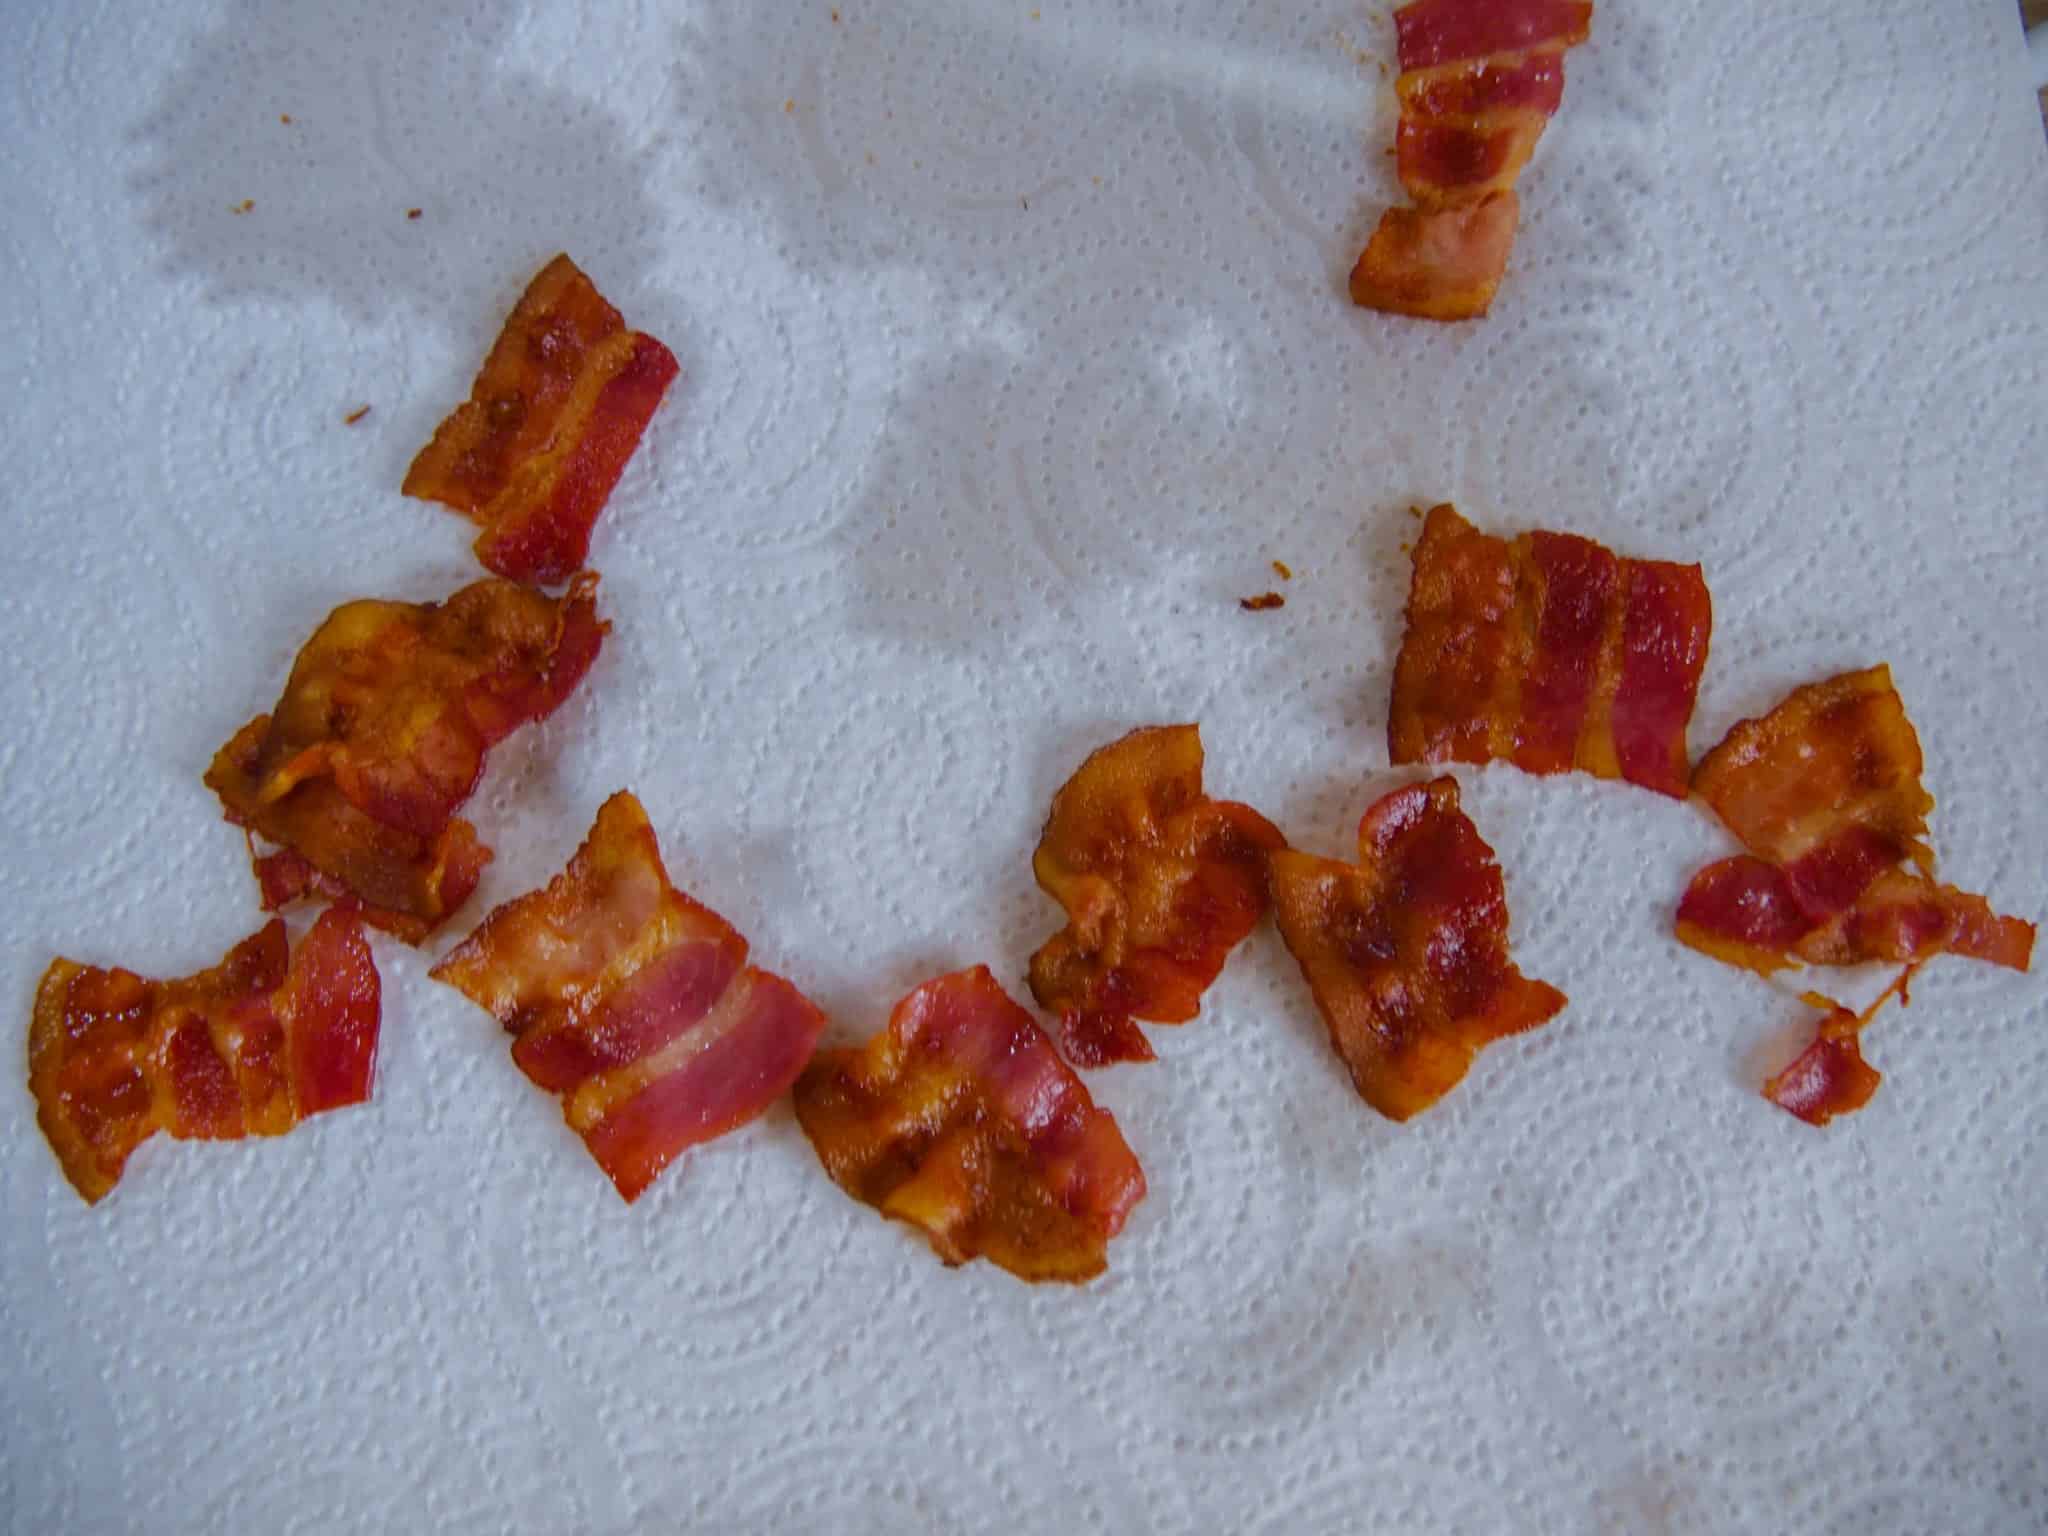 Baconchips nach dem backen trocknen